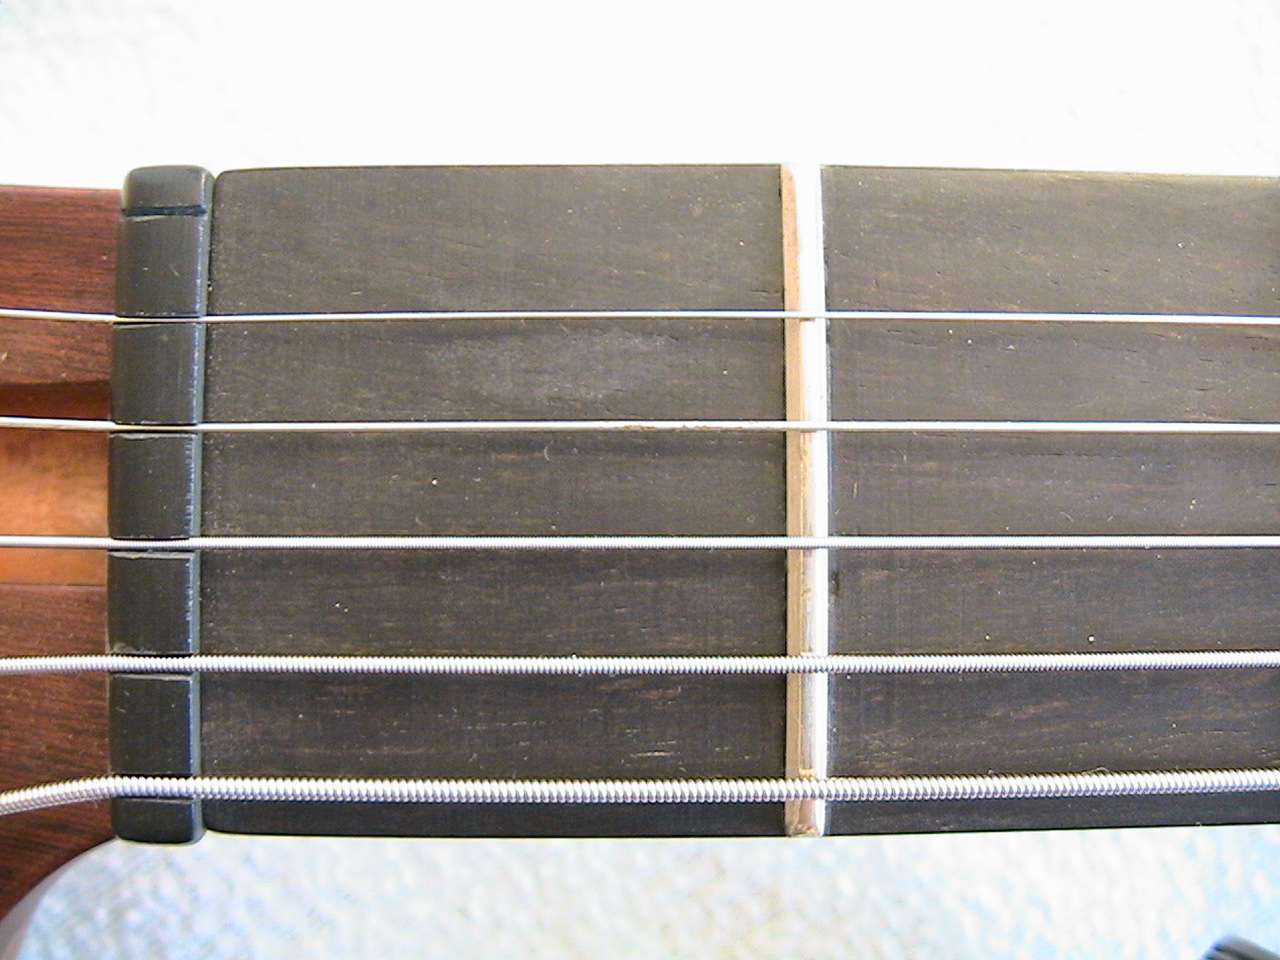 Ценник от гитары. ESP M 2 headstock. Реплика мастера